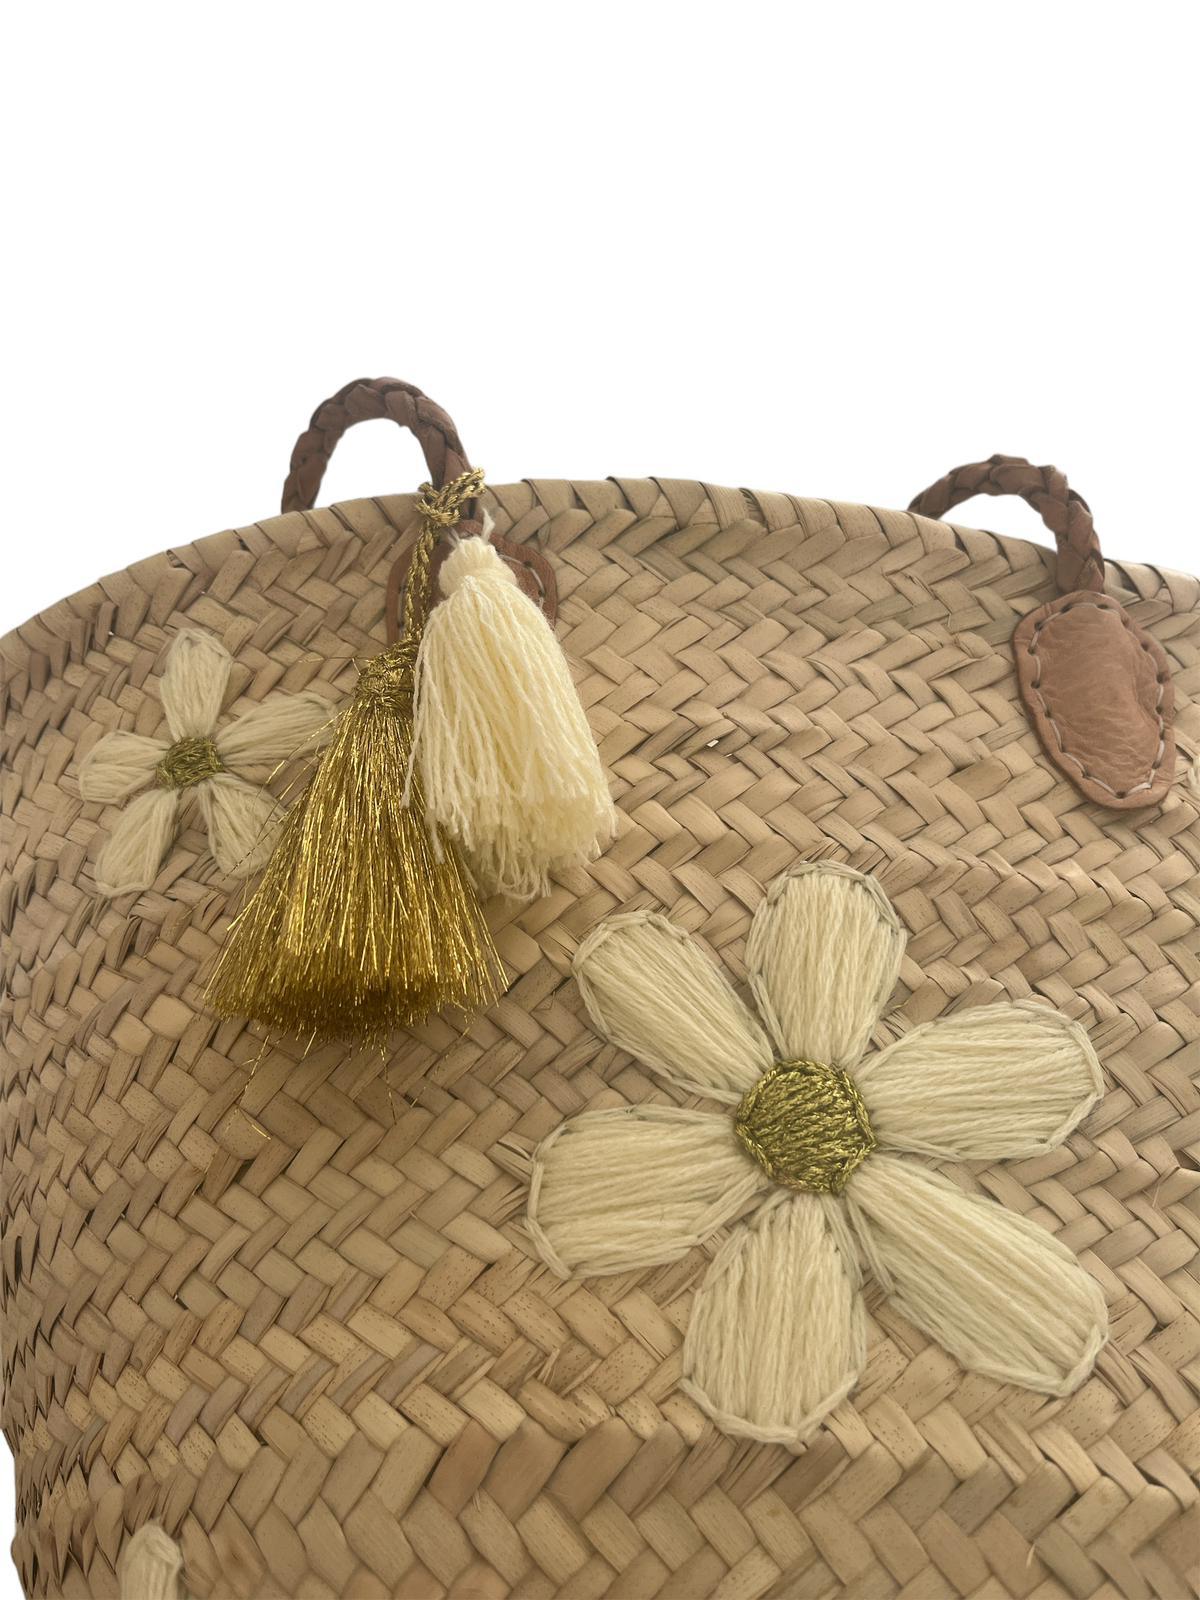 Borsa fatta a mano e intrecciata in foglie di palma con ricami in lana, motivo Fiori Bianchi e Oro - MARIKA DE PAOLA - HOME DECOR